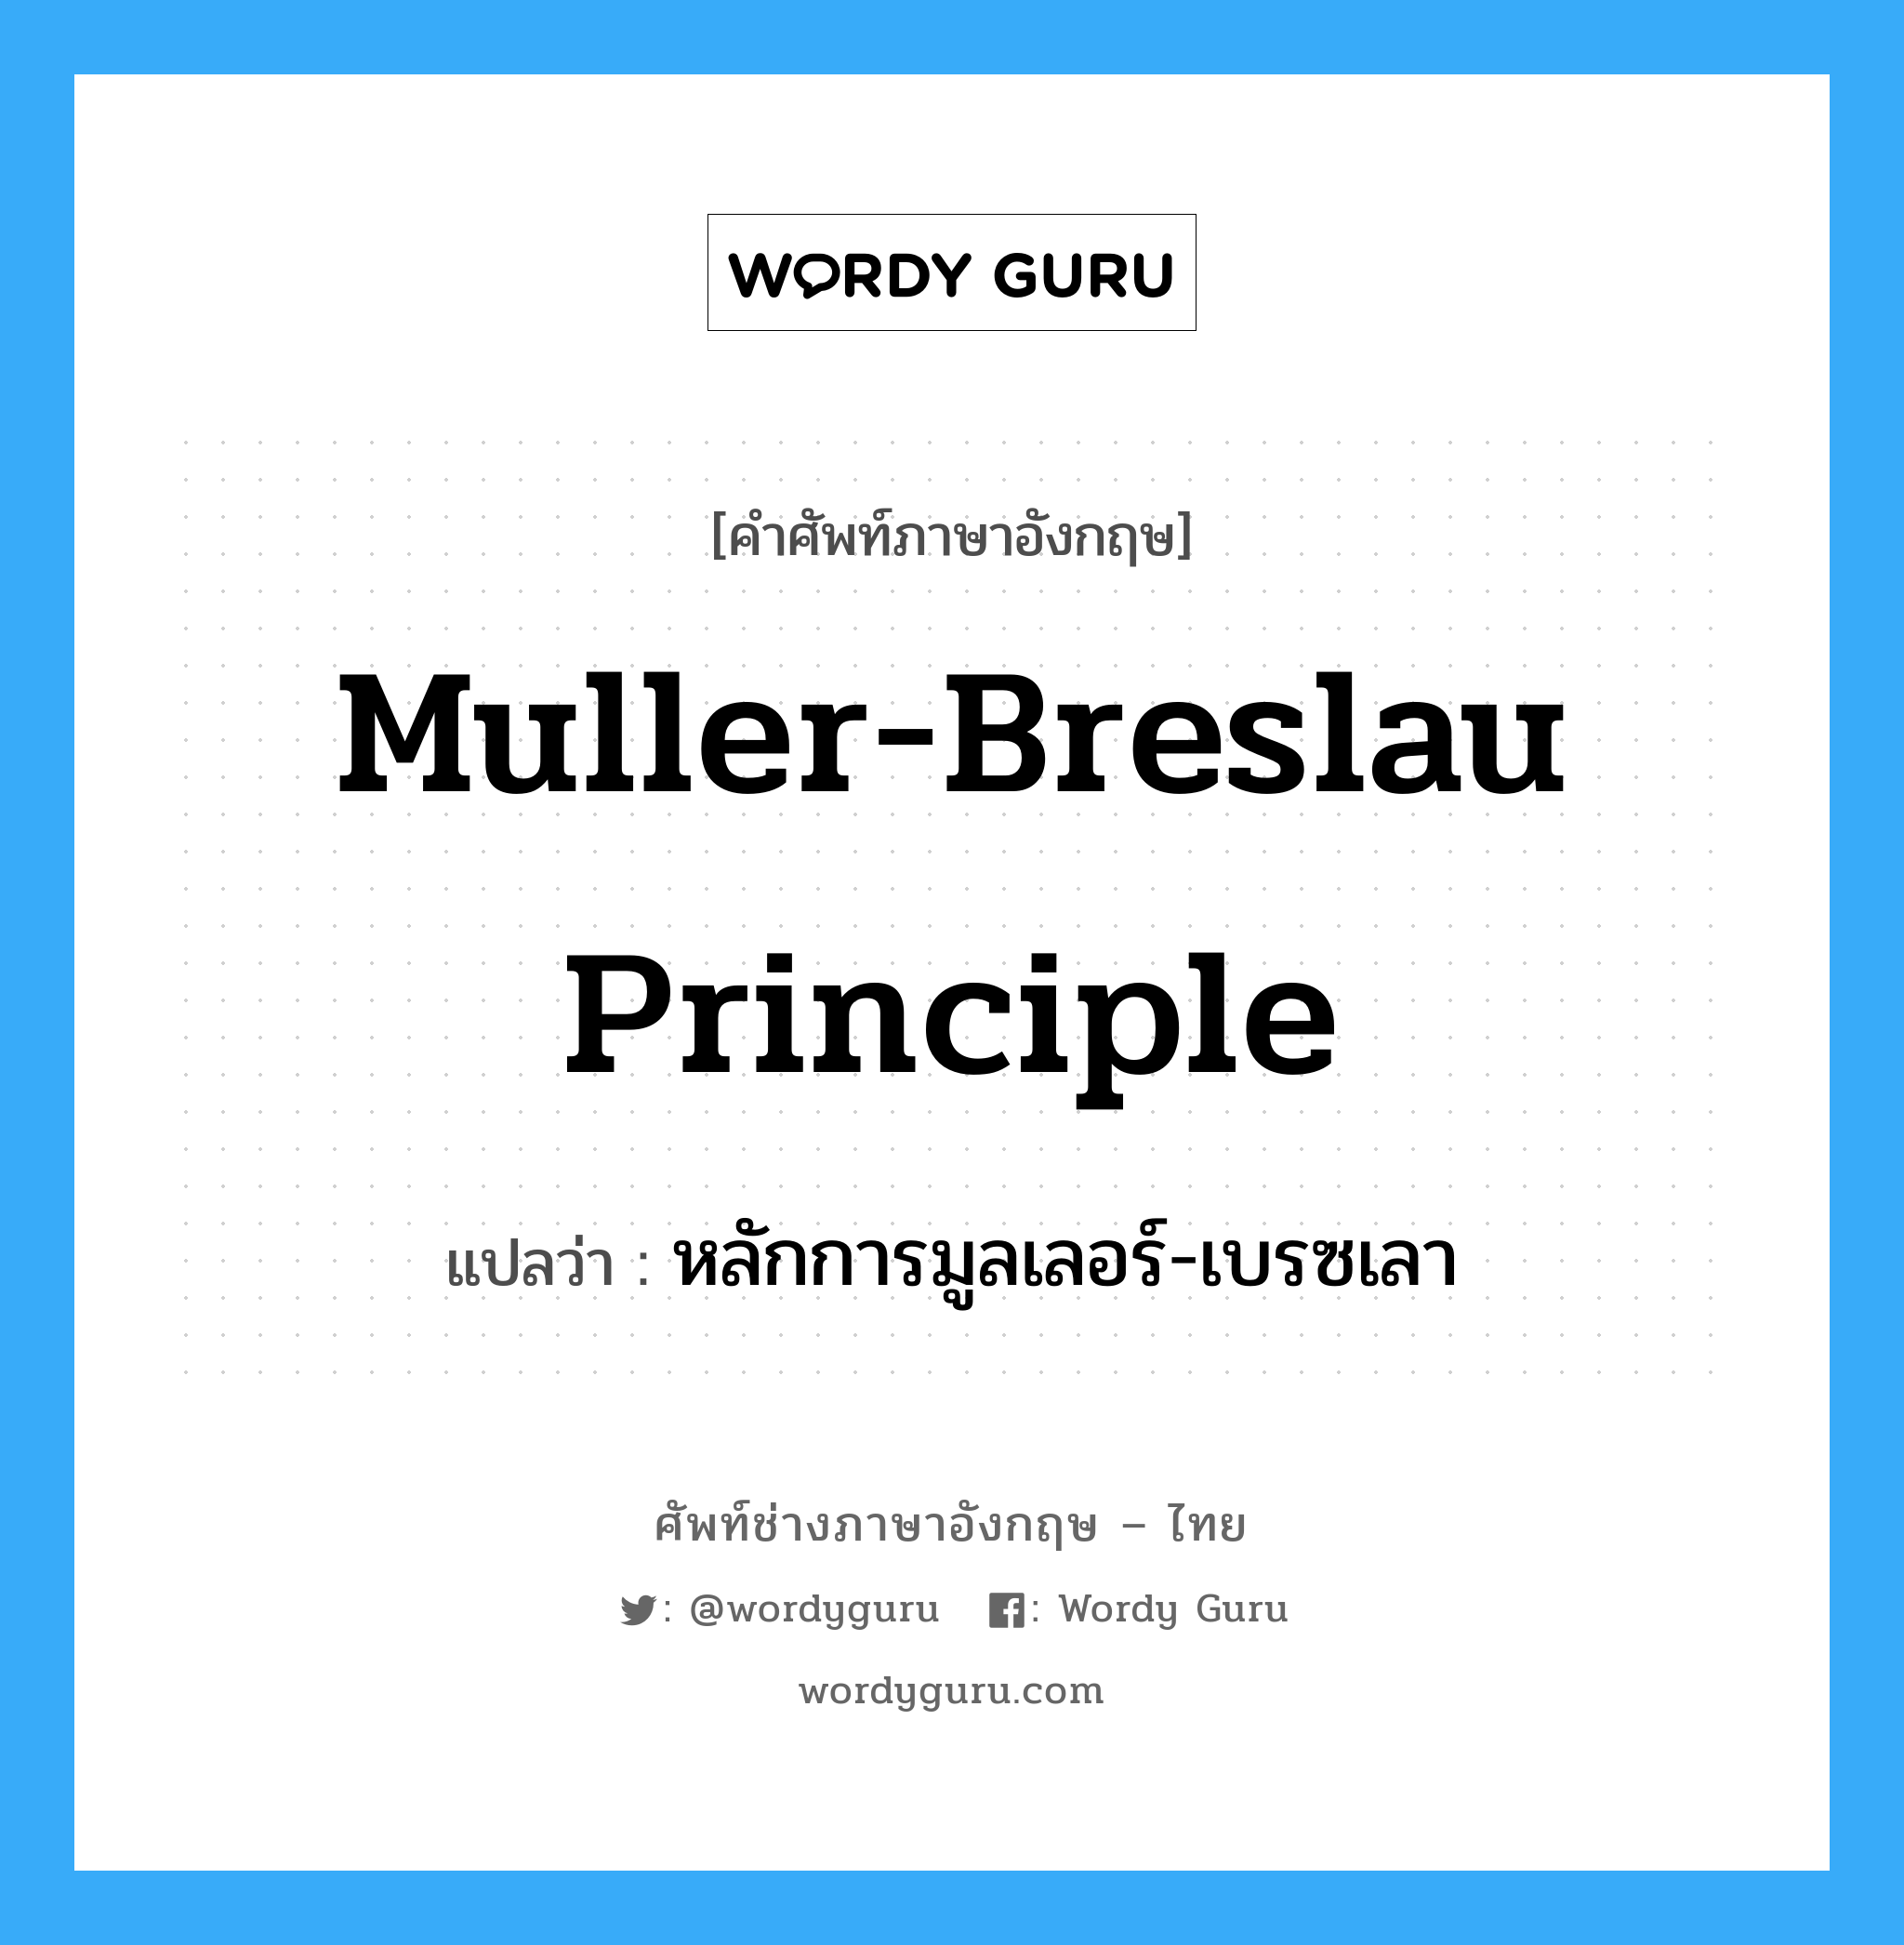 หลักการมูลเลอร์-เบรซเลา ภาษาอังกฤษ?, คำศัพท์ช่างภาษาอังกฤษ - ไทย หลักการมูลเลอร์-เบรซเลา คำศัพท์ภาษาอังกฤษ หลักการมูลเลอร์-เบรซเลา แปลว่า Muller-Breslau Principle